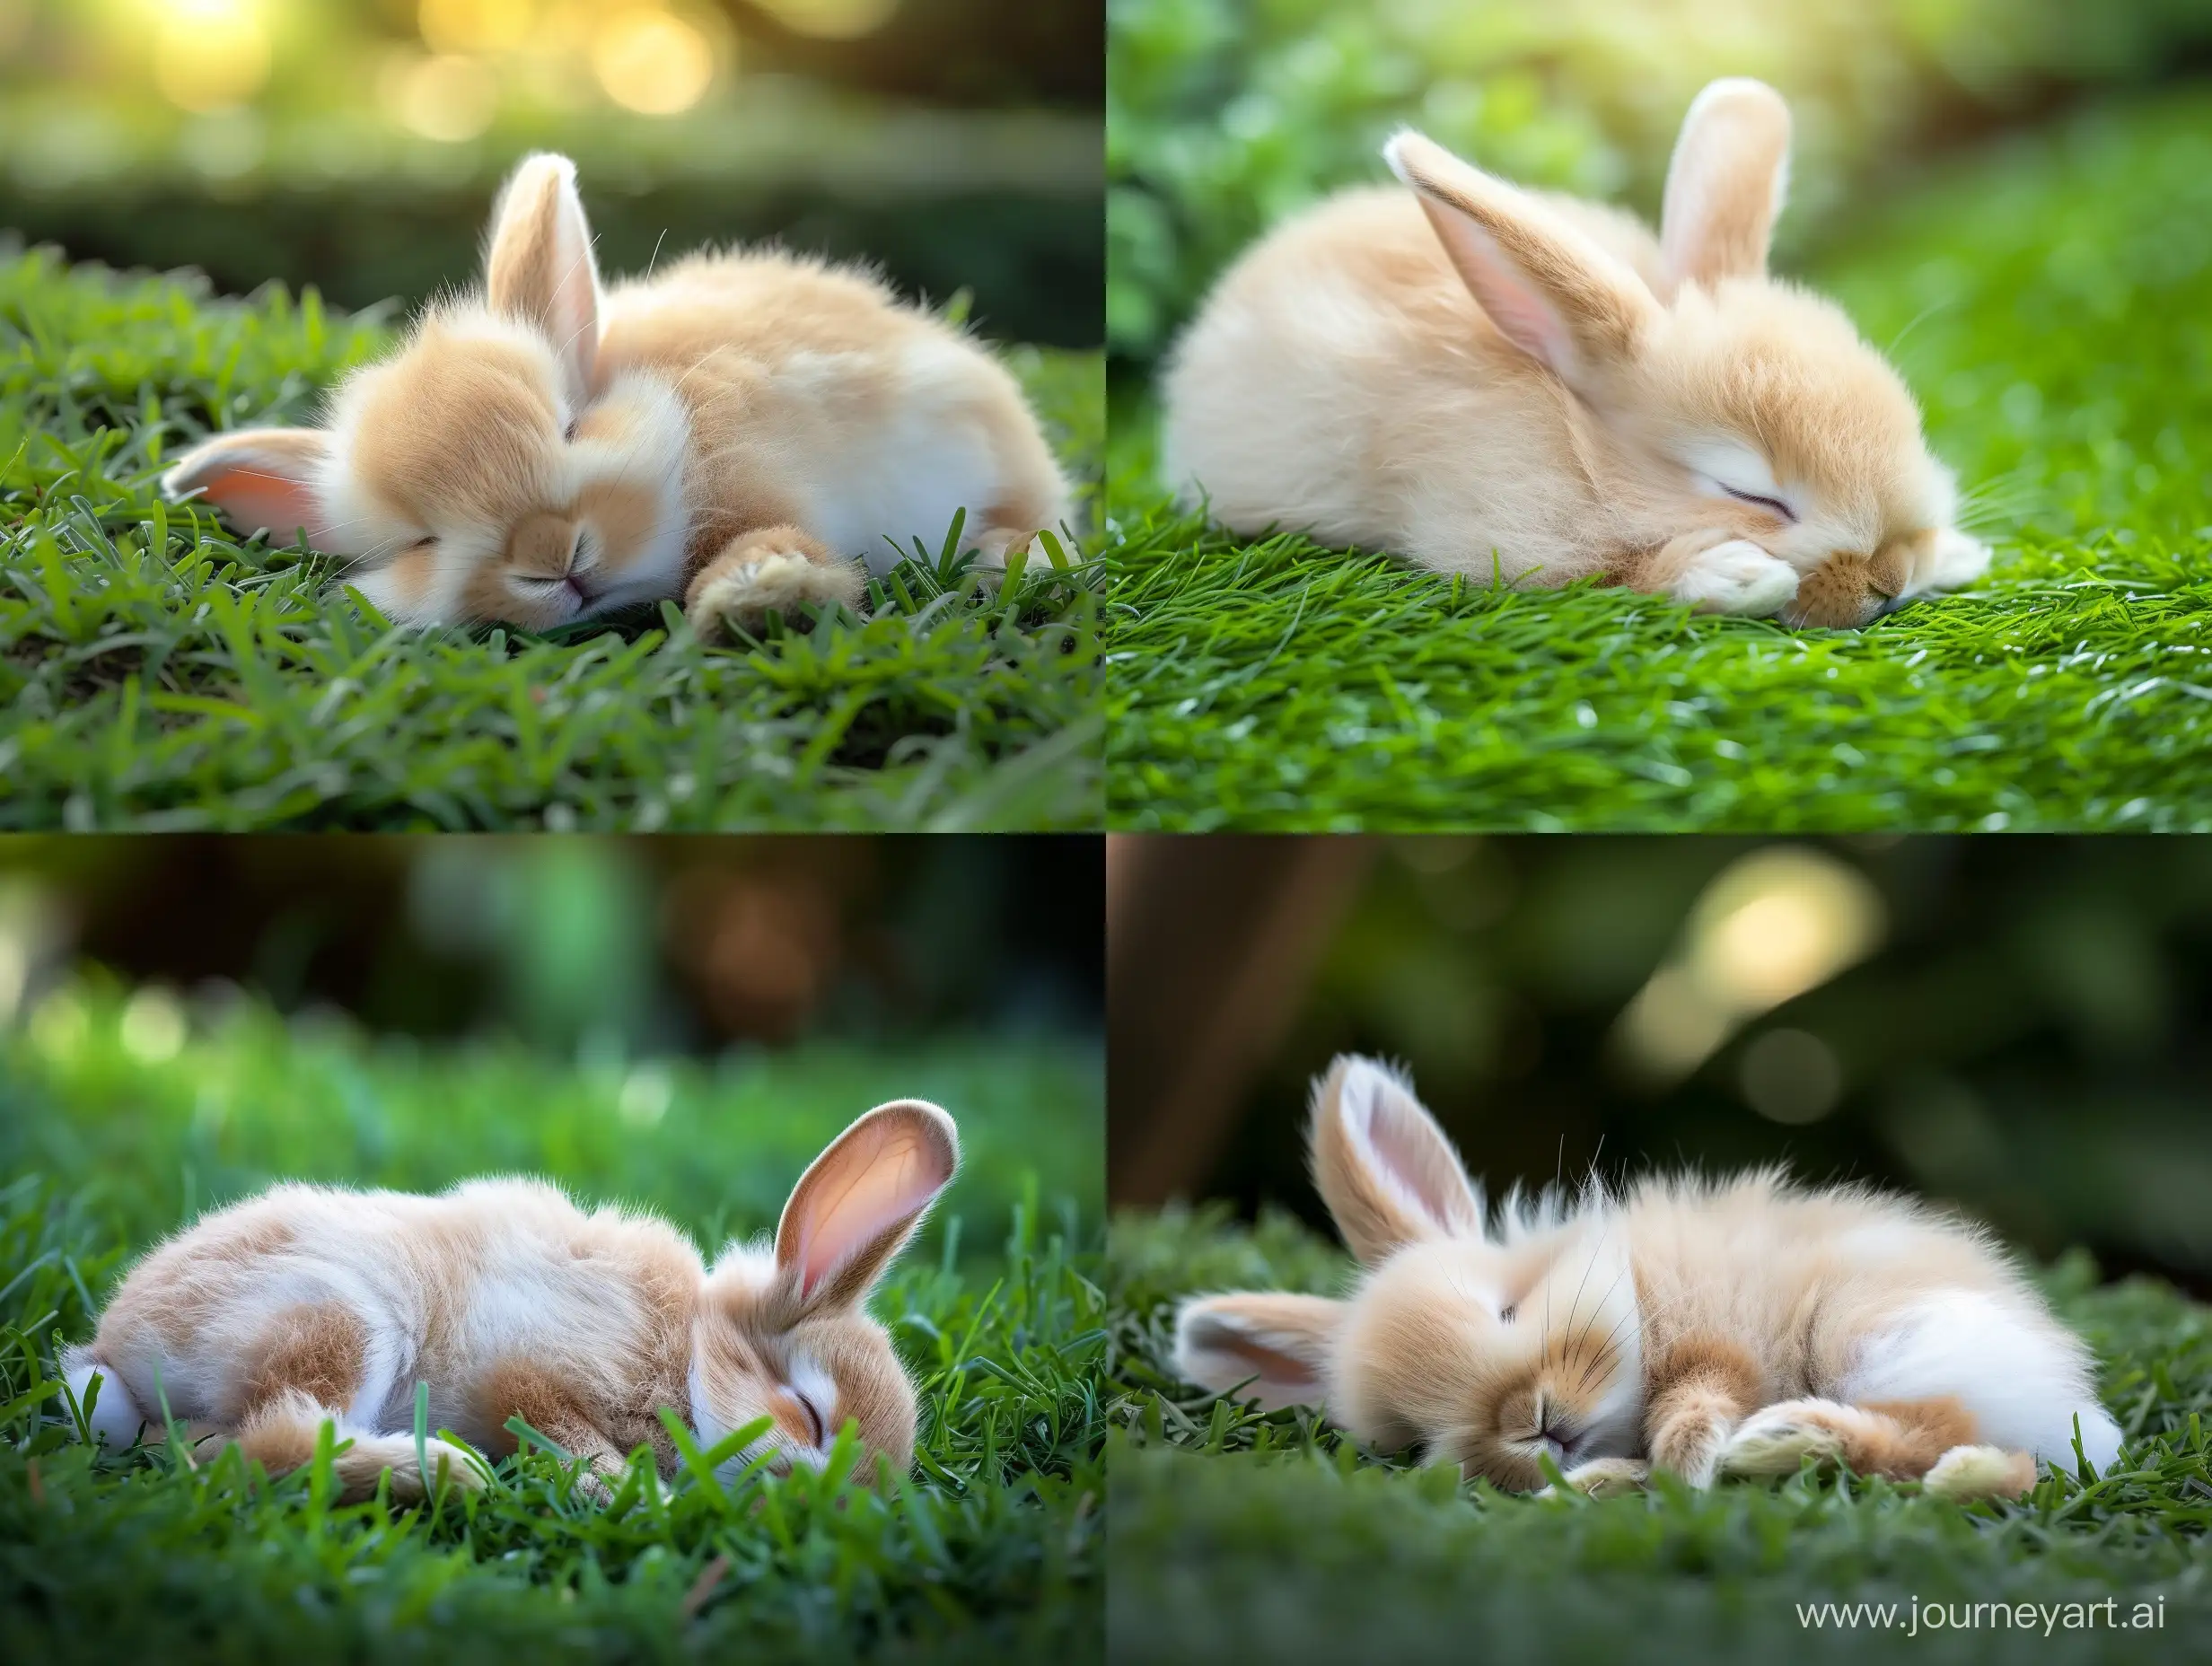 Adorable-Hyperrealistic-Sleeping-Rabbit-in-Ivan-Shishkin-Style